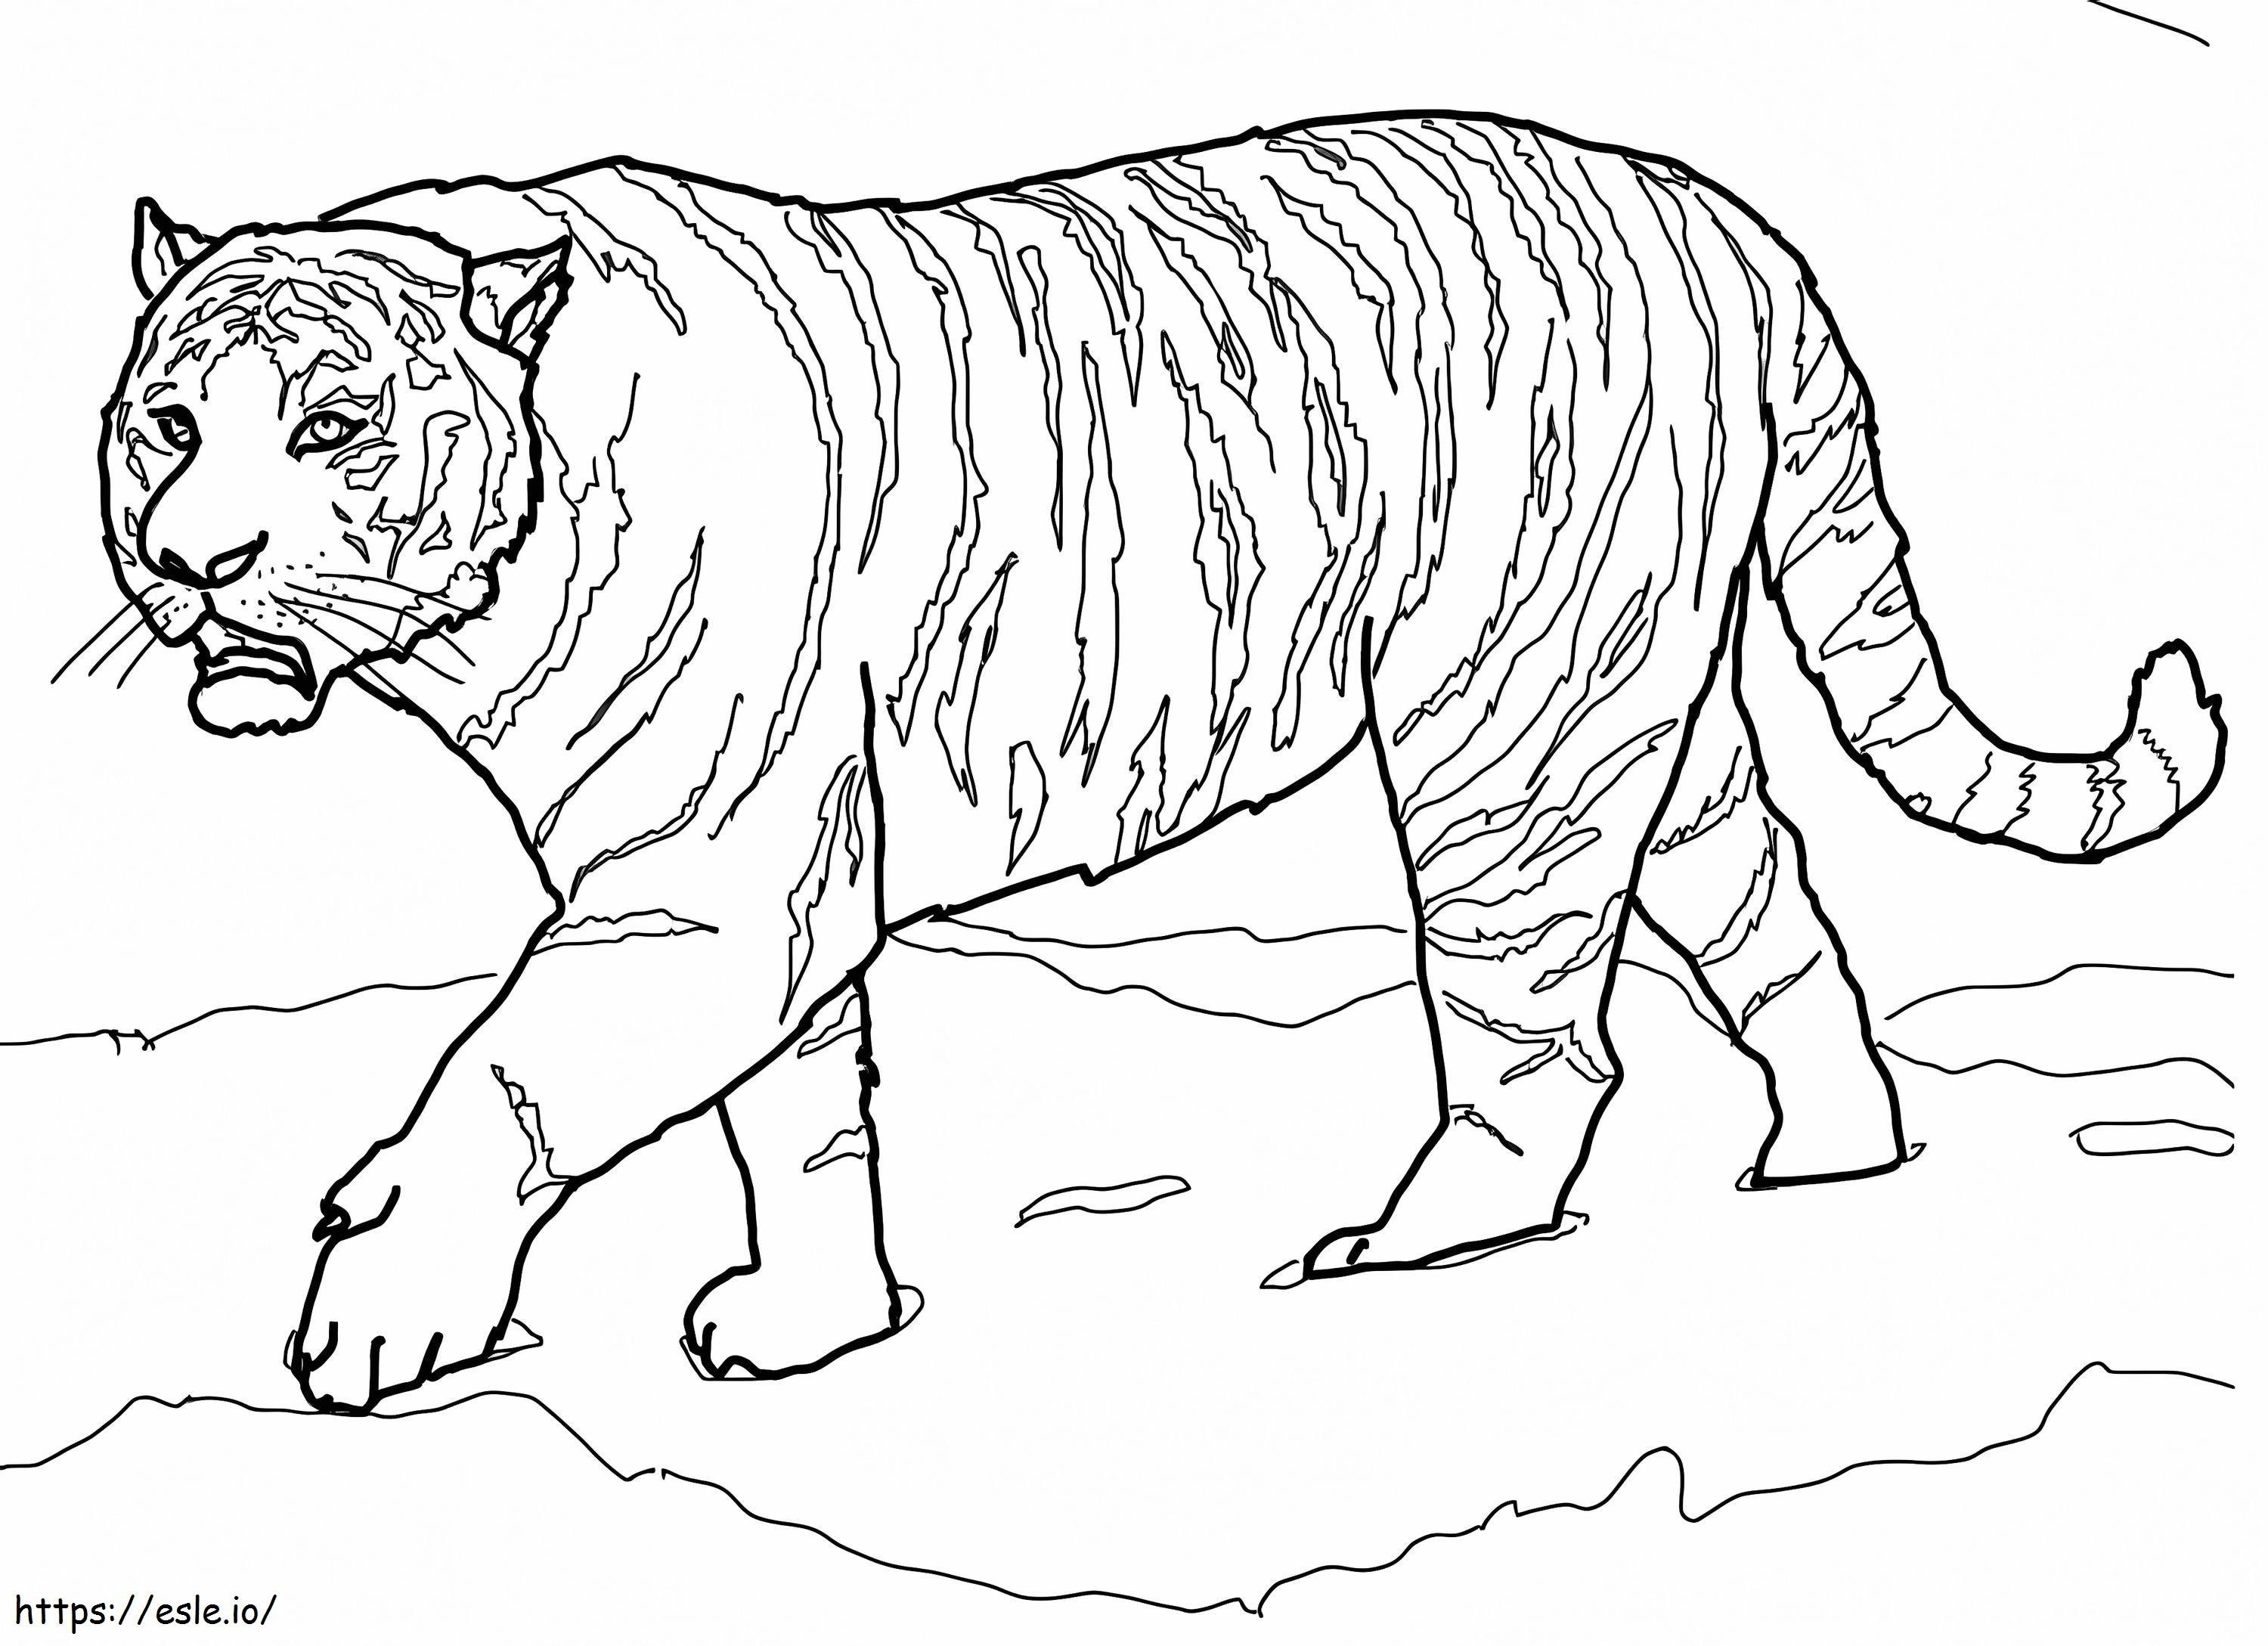 Amur Tiger coloring page